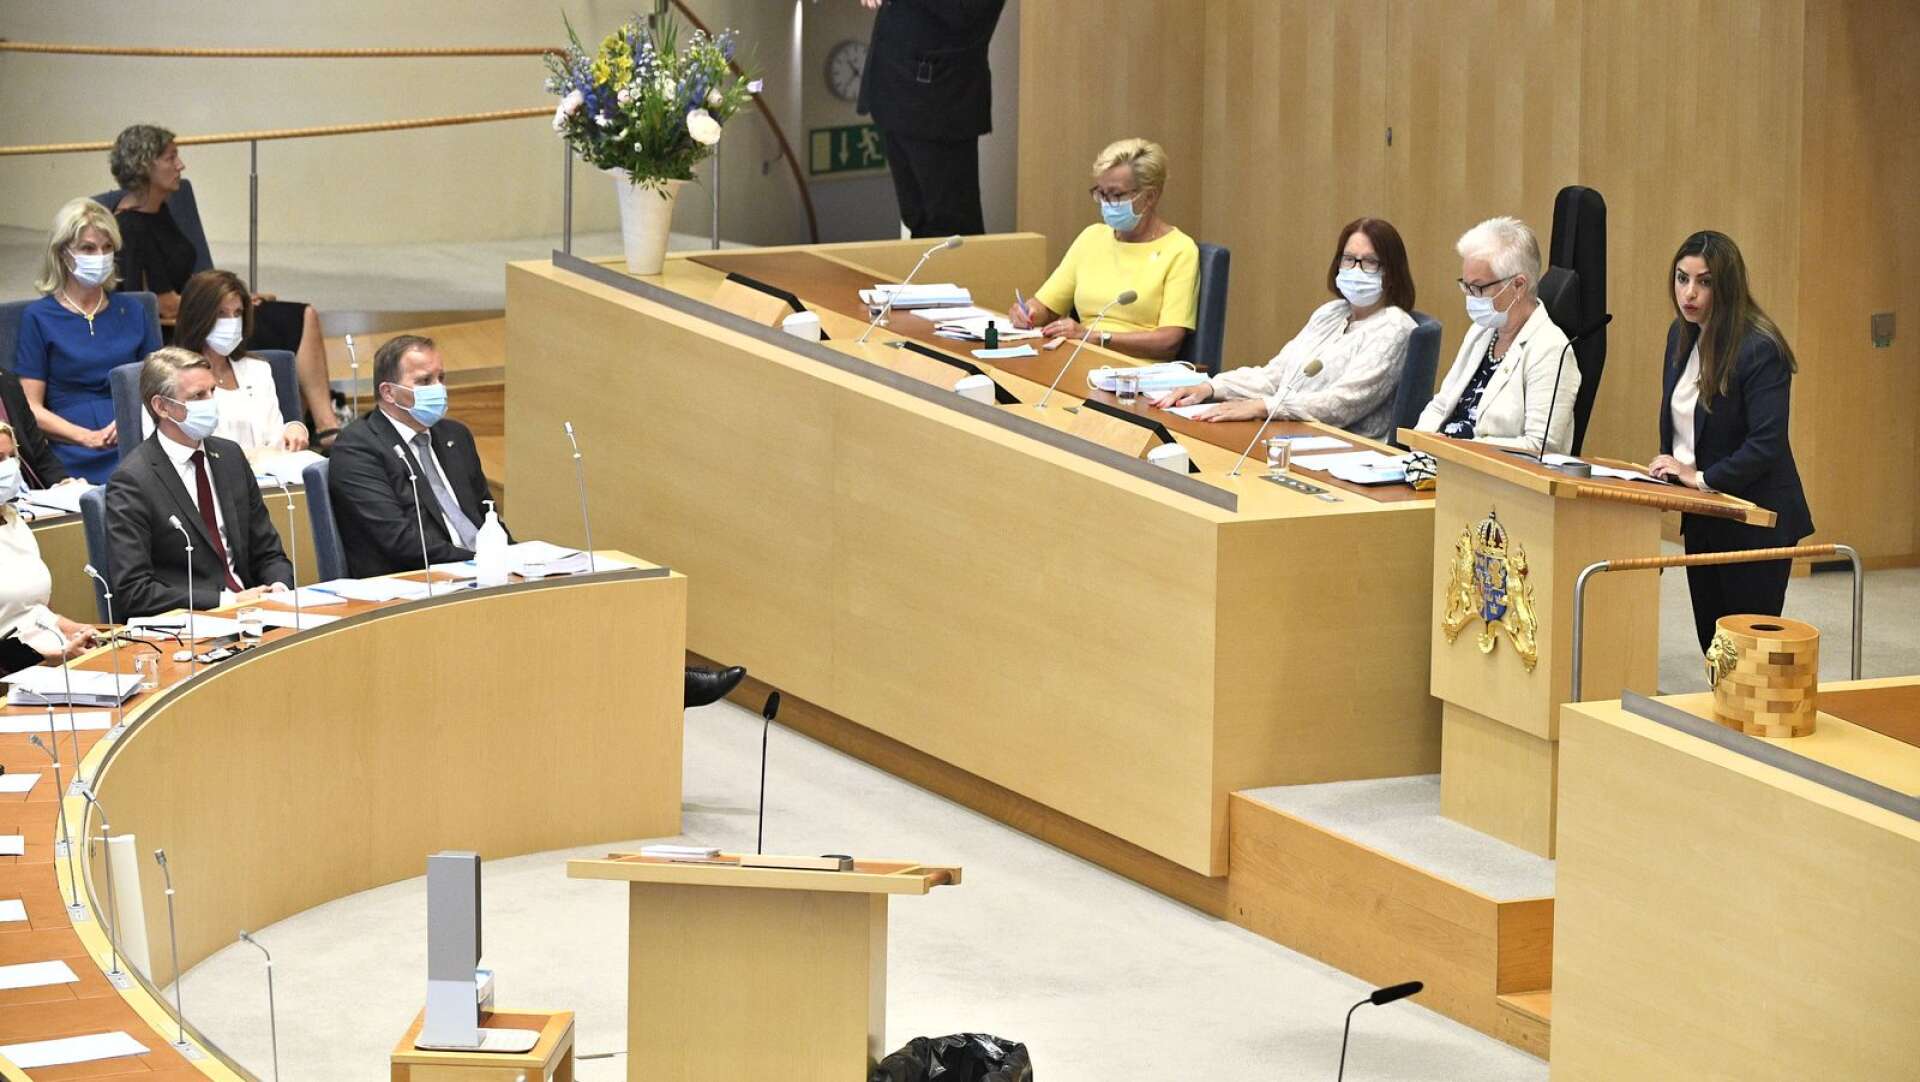 Vänsterpartiets partiledare Nooshi Dadgostar (V) i riksdagen inför omröstningen av ett förslag om misstroendeförklaring. Miljö- och klimatminister Per Bolund (MP) och statsminister Stefan Löfven (S) lyssnar.